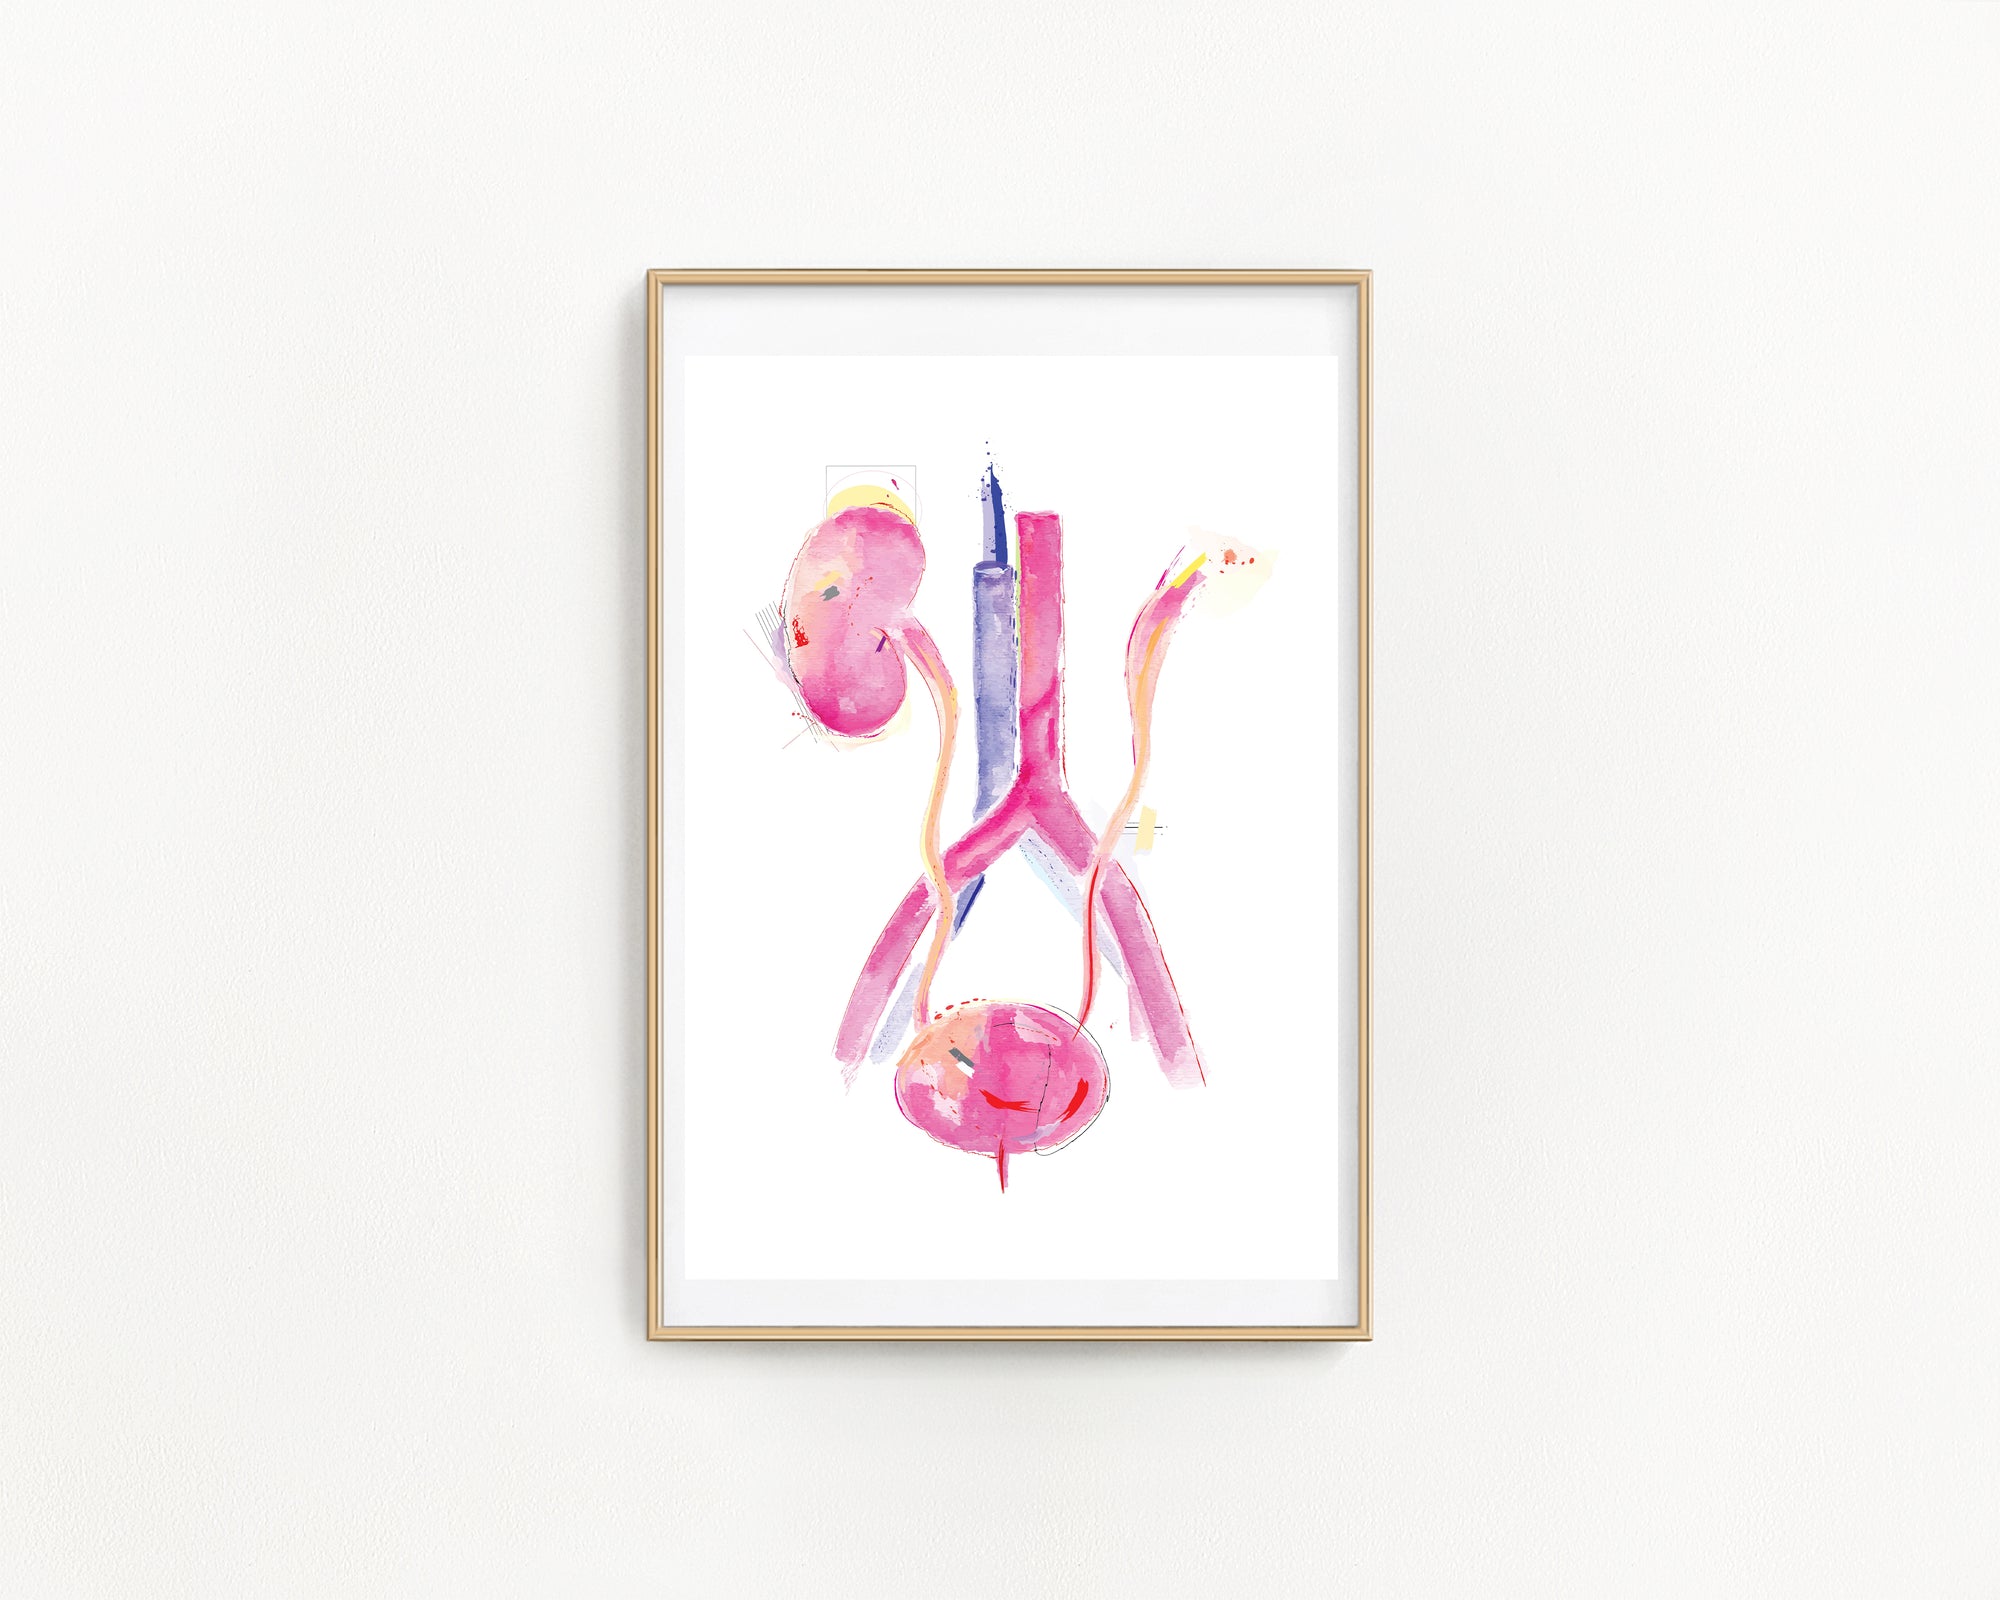 bladder anatomy art